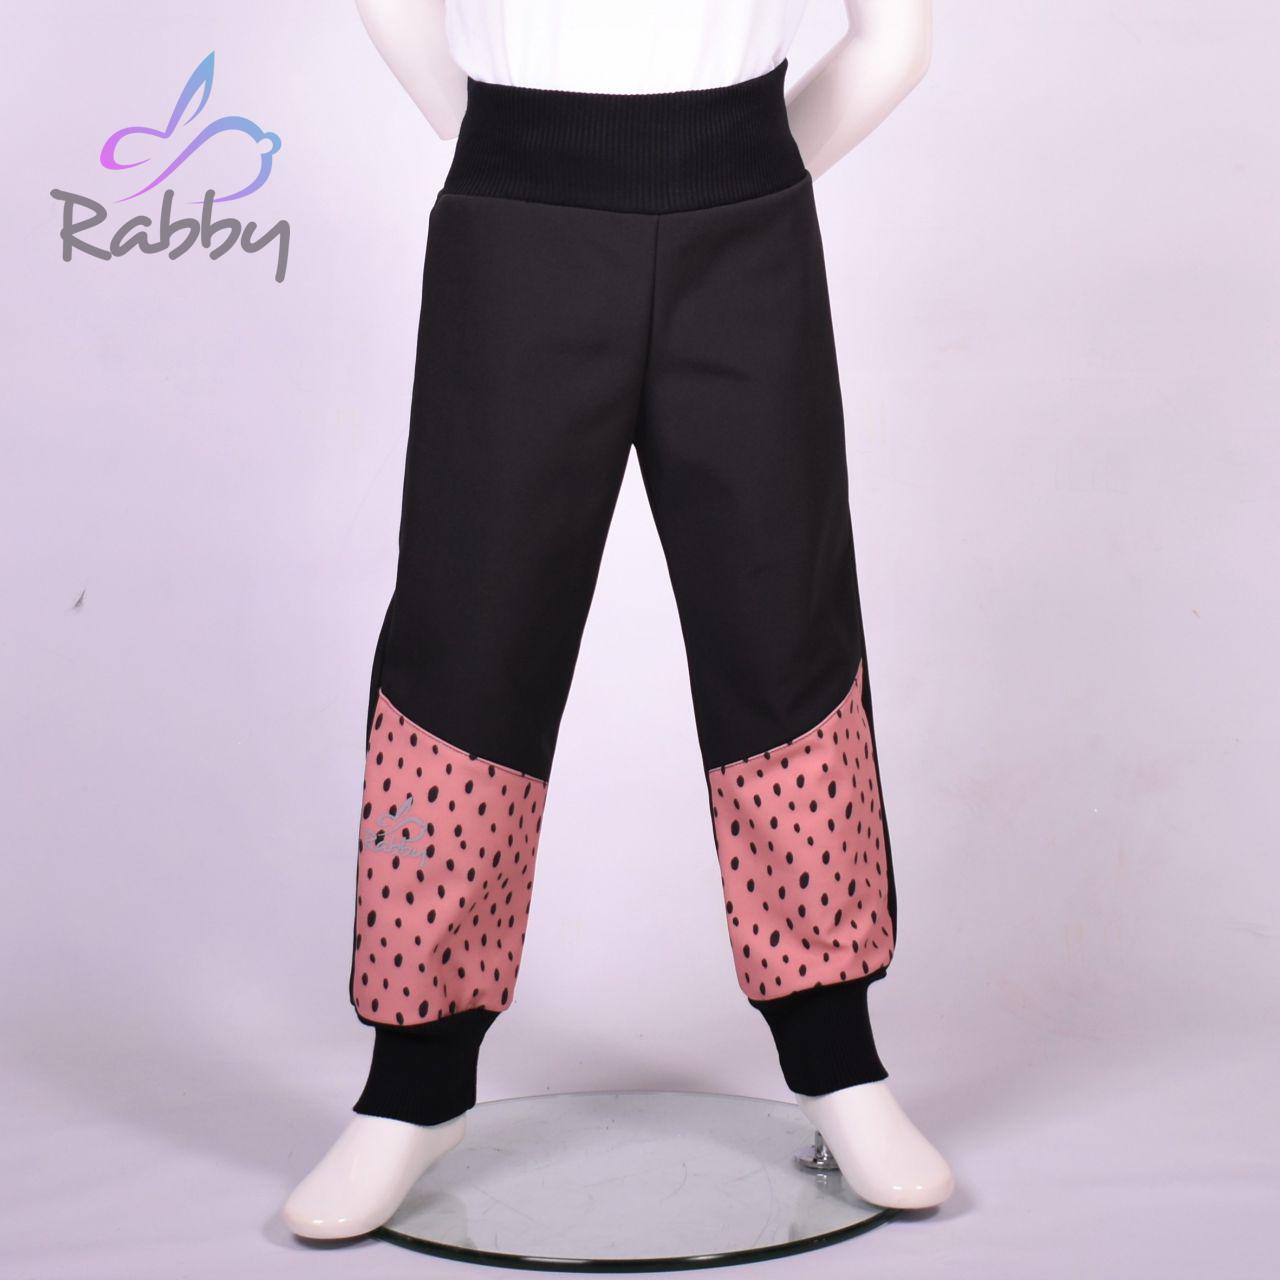 Zimní softshellové kalhoty černé s přestřižením skvrnky na růžové - klasický střih vel. 134